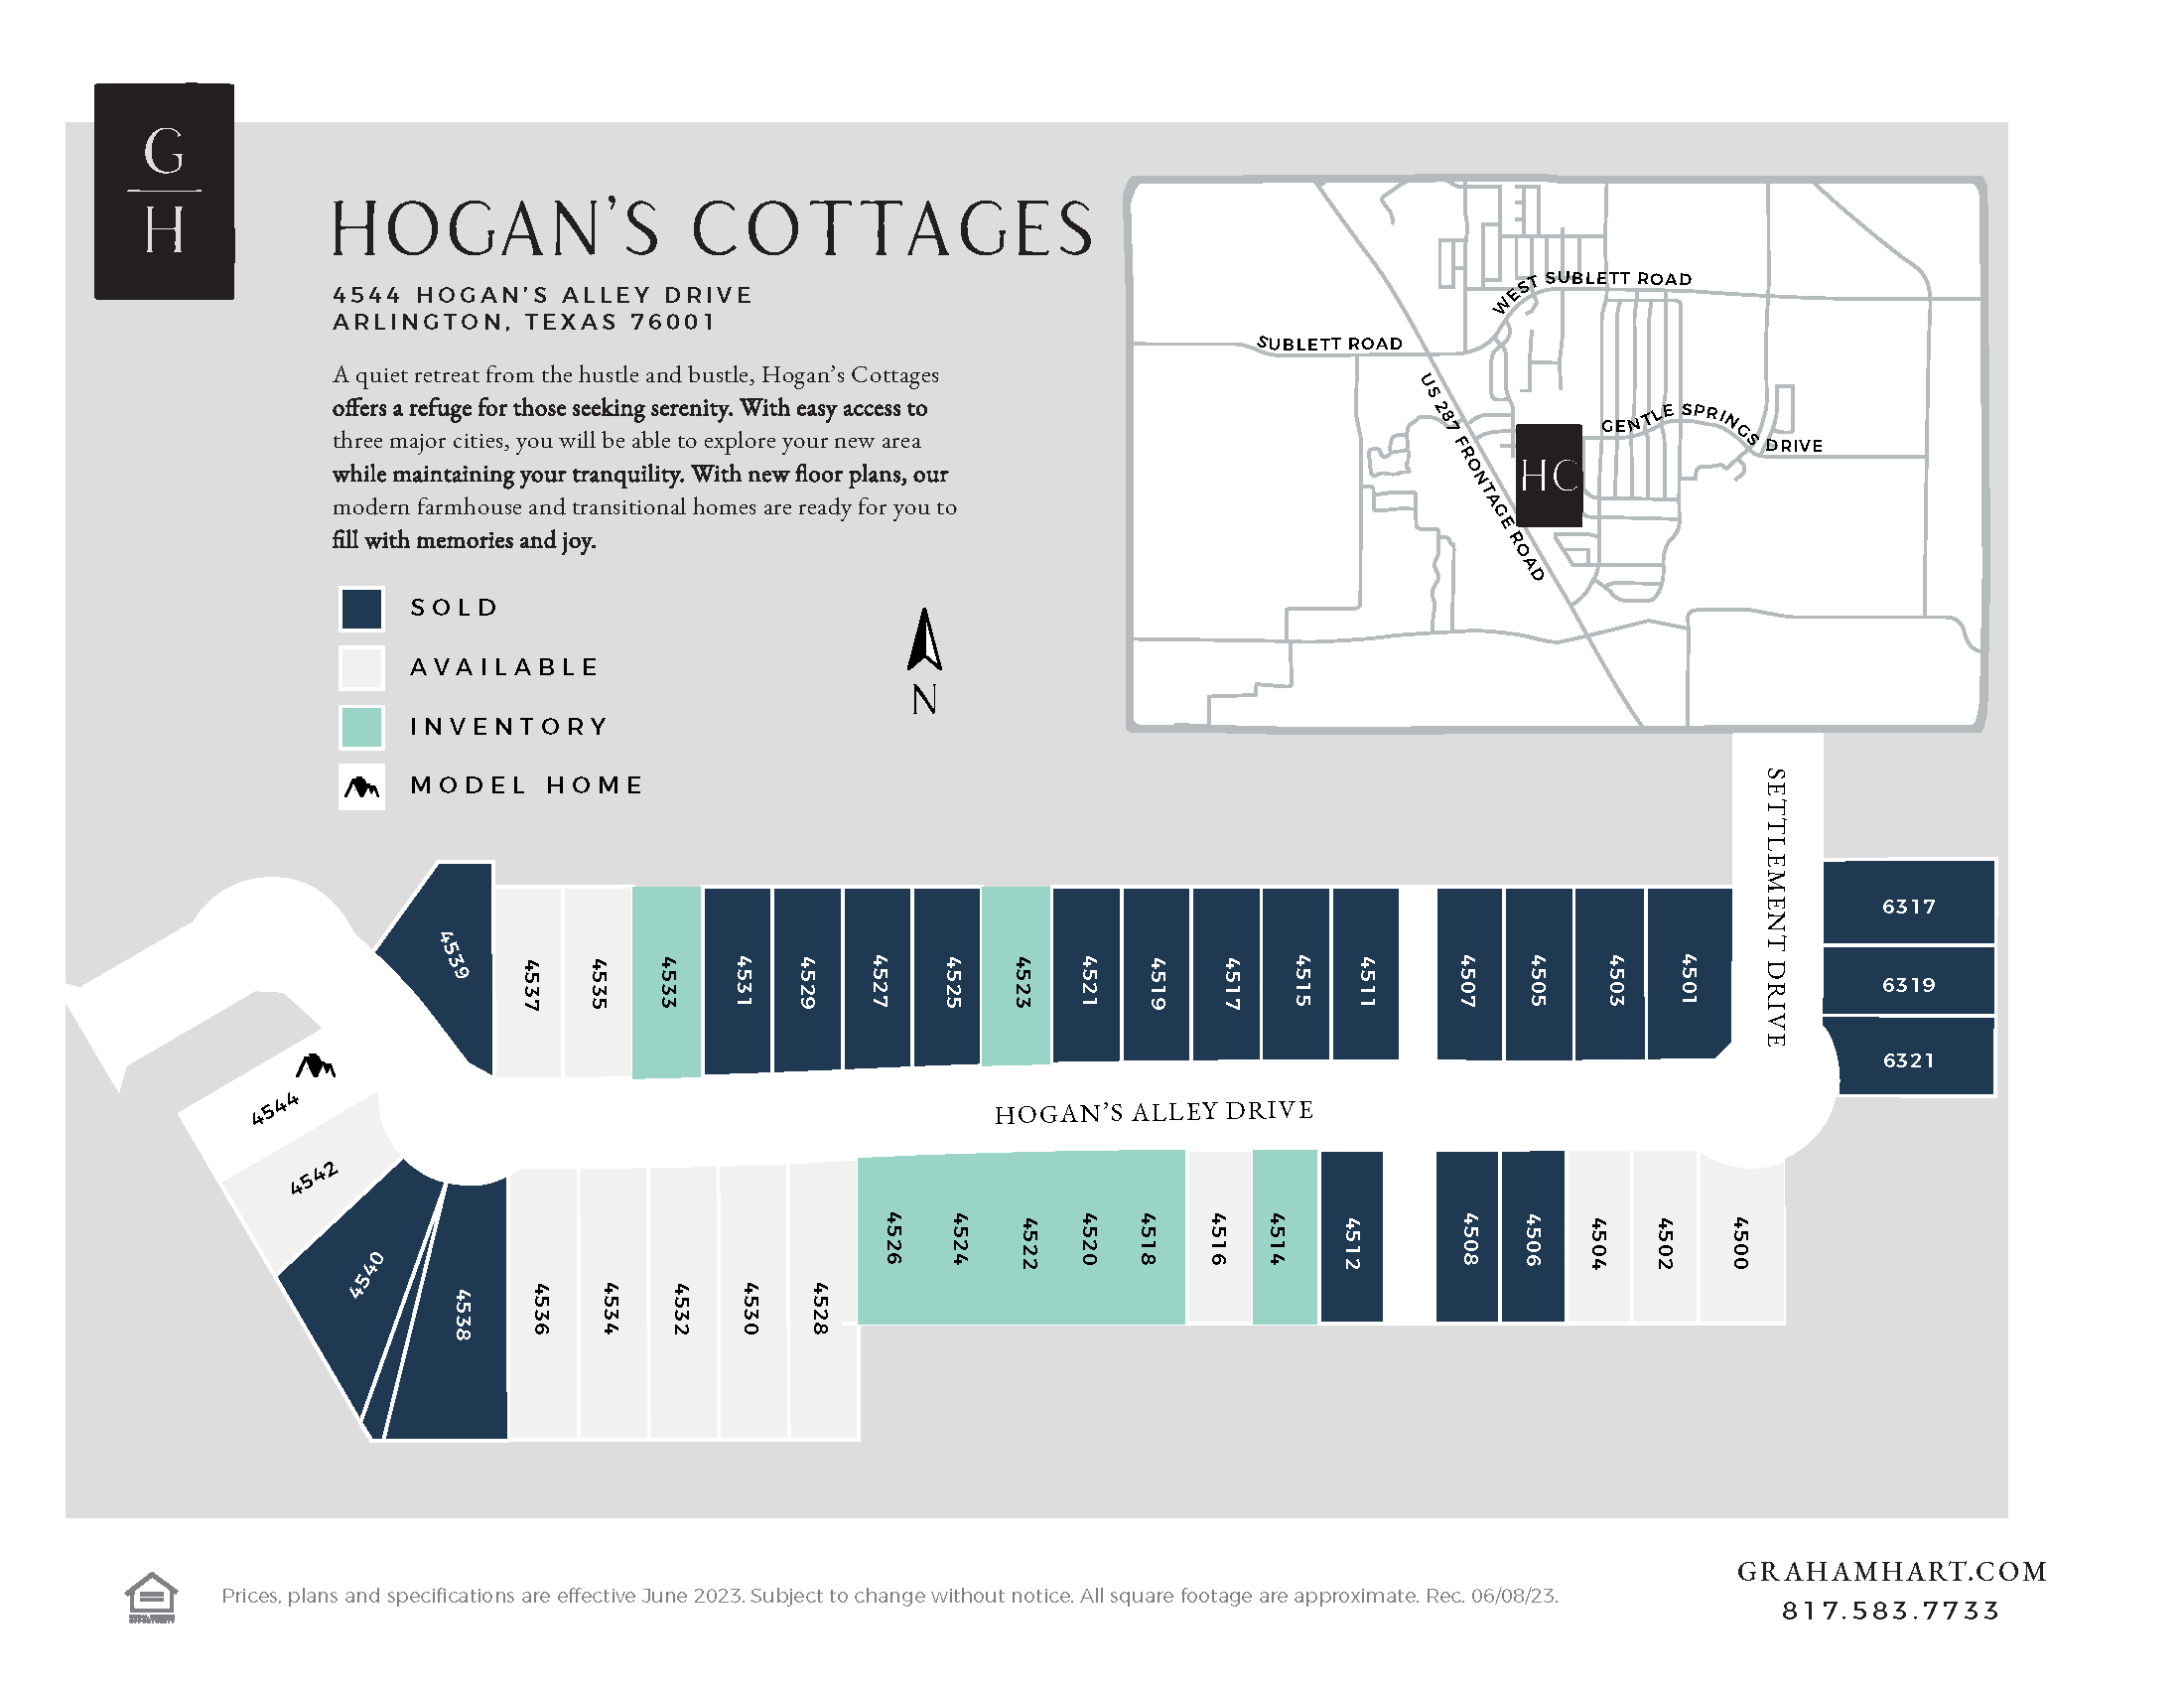 Hogan’s Cottages community plat map